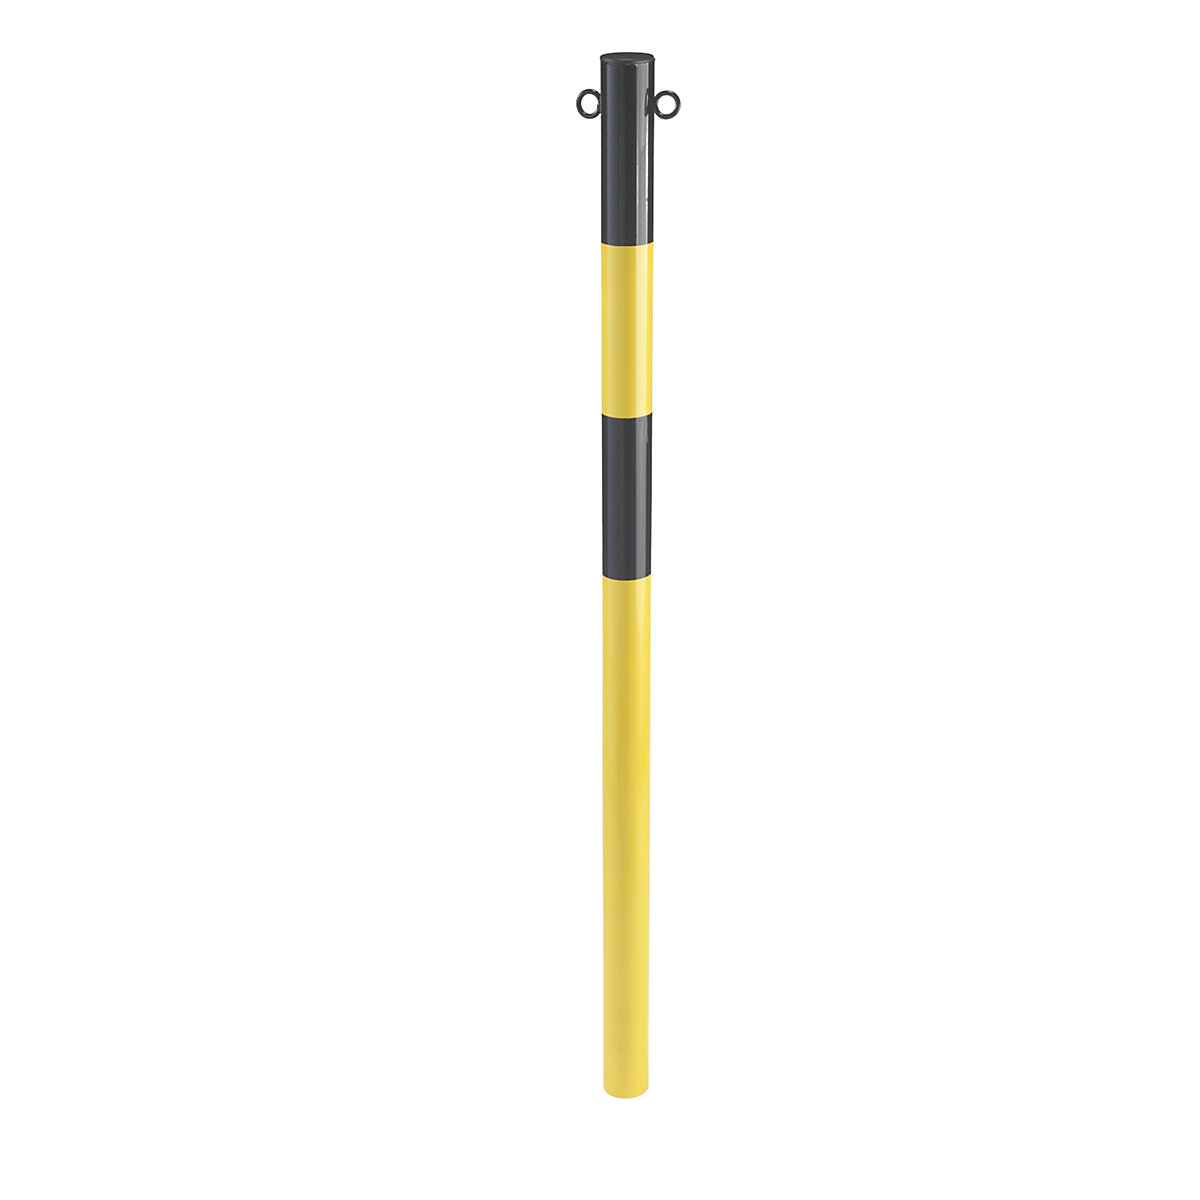 Afzetpaal van staalbuis, voor in gegoten beton, Ø 60 mm, geel/zwart, verzinkt en gelakt-4